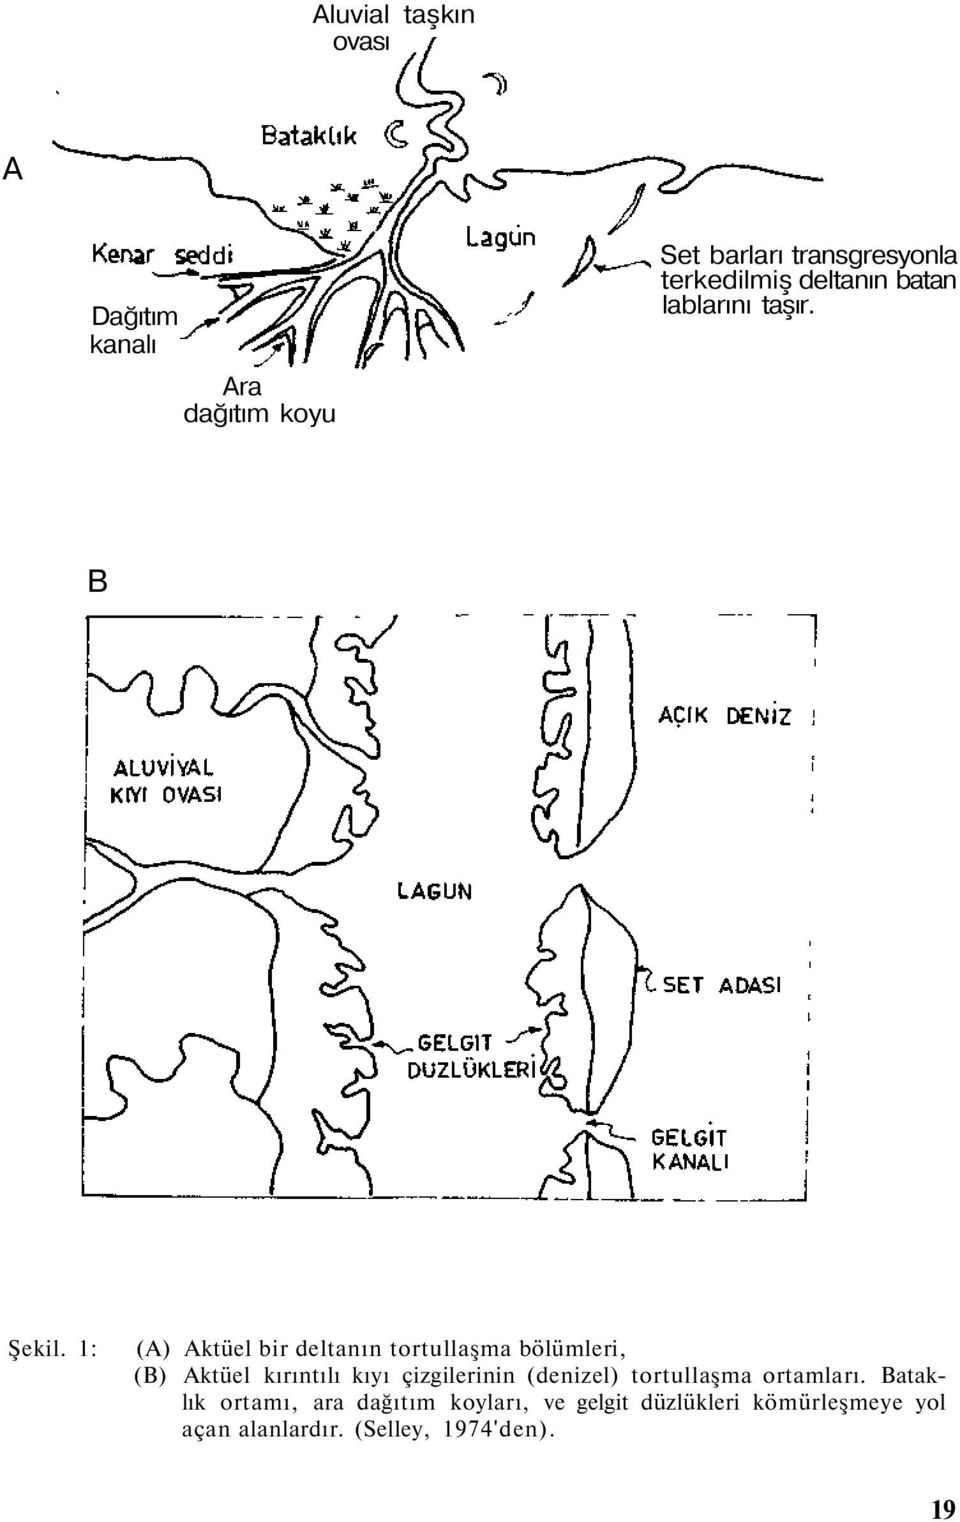 1: (A) Aktüel bir deltanın tortullaşma bölümleri, (B) Aktüel kırıntılı kıyı çizgilerinin